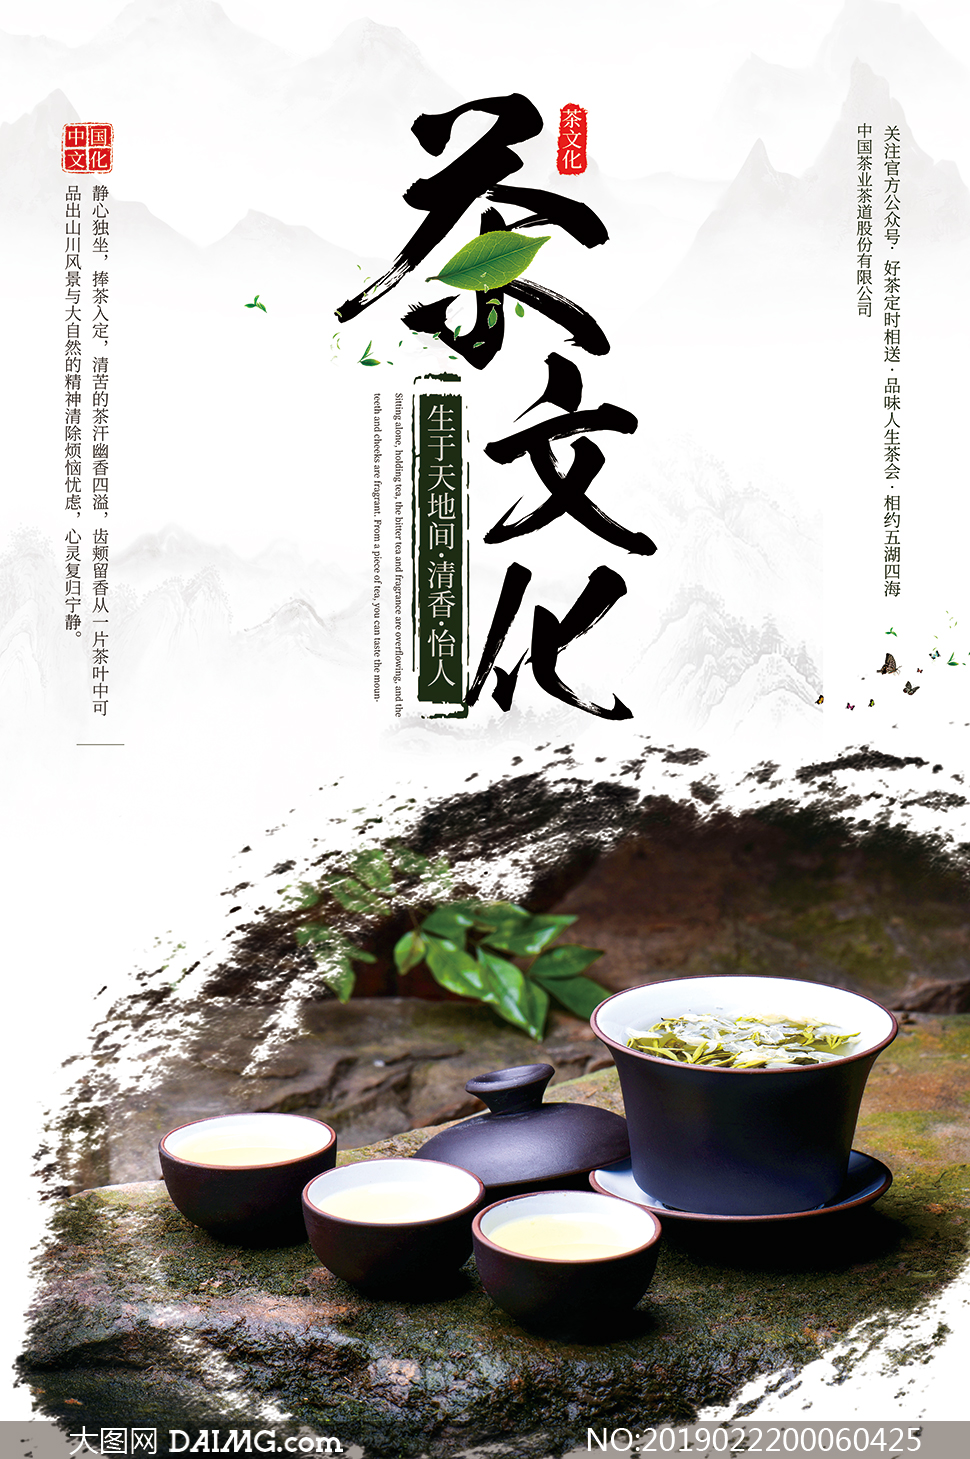 中国茶文化图片 简单图片